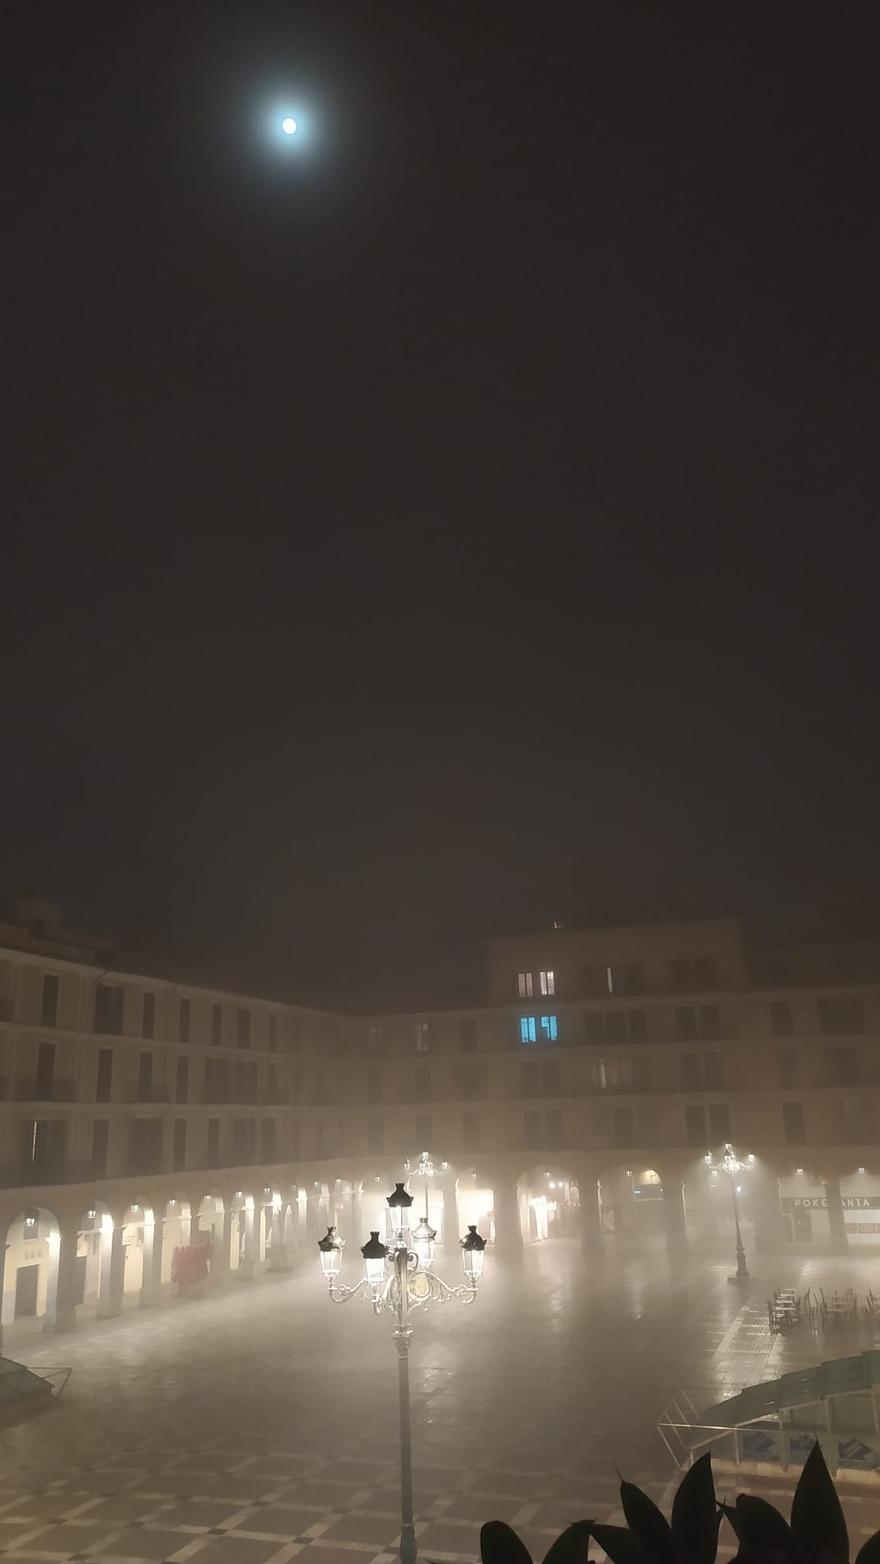 La niebla llegó la noche del jueves a la plaza Major de Palma, una de las zonas más aisladas de la ciudad